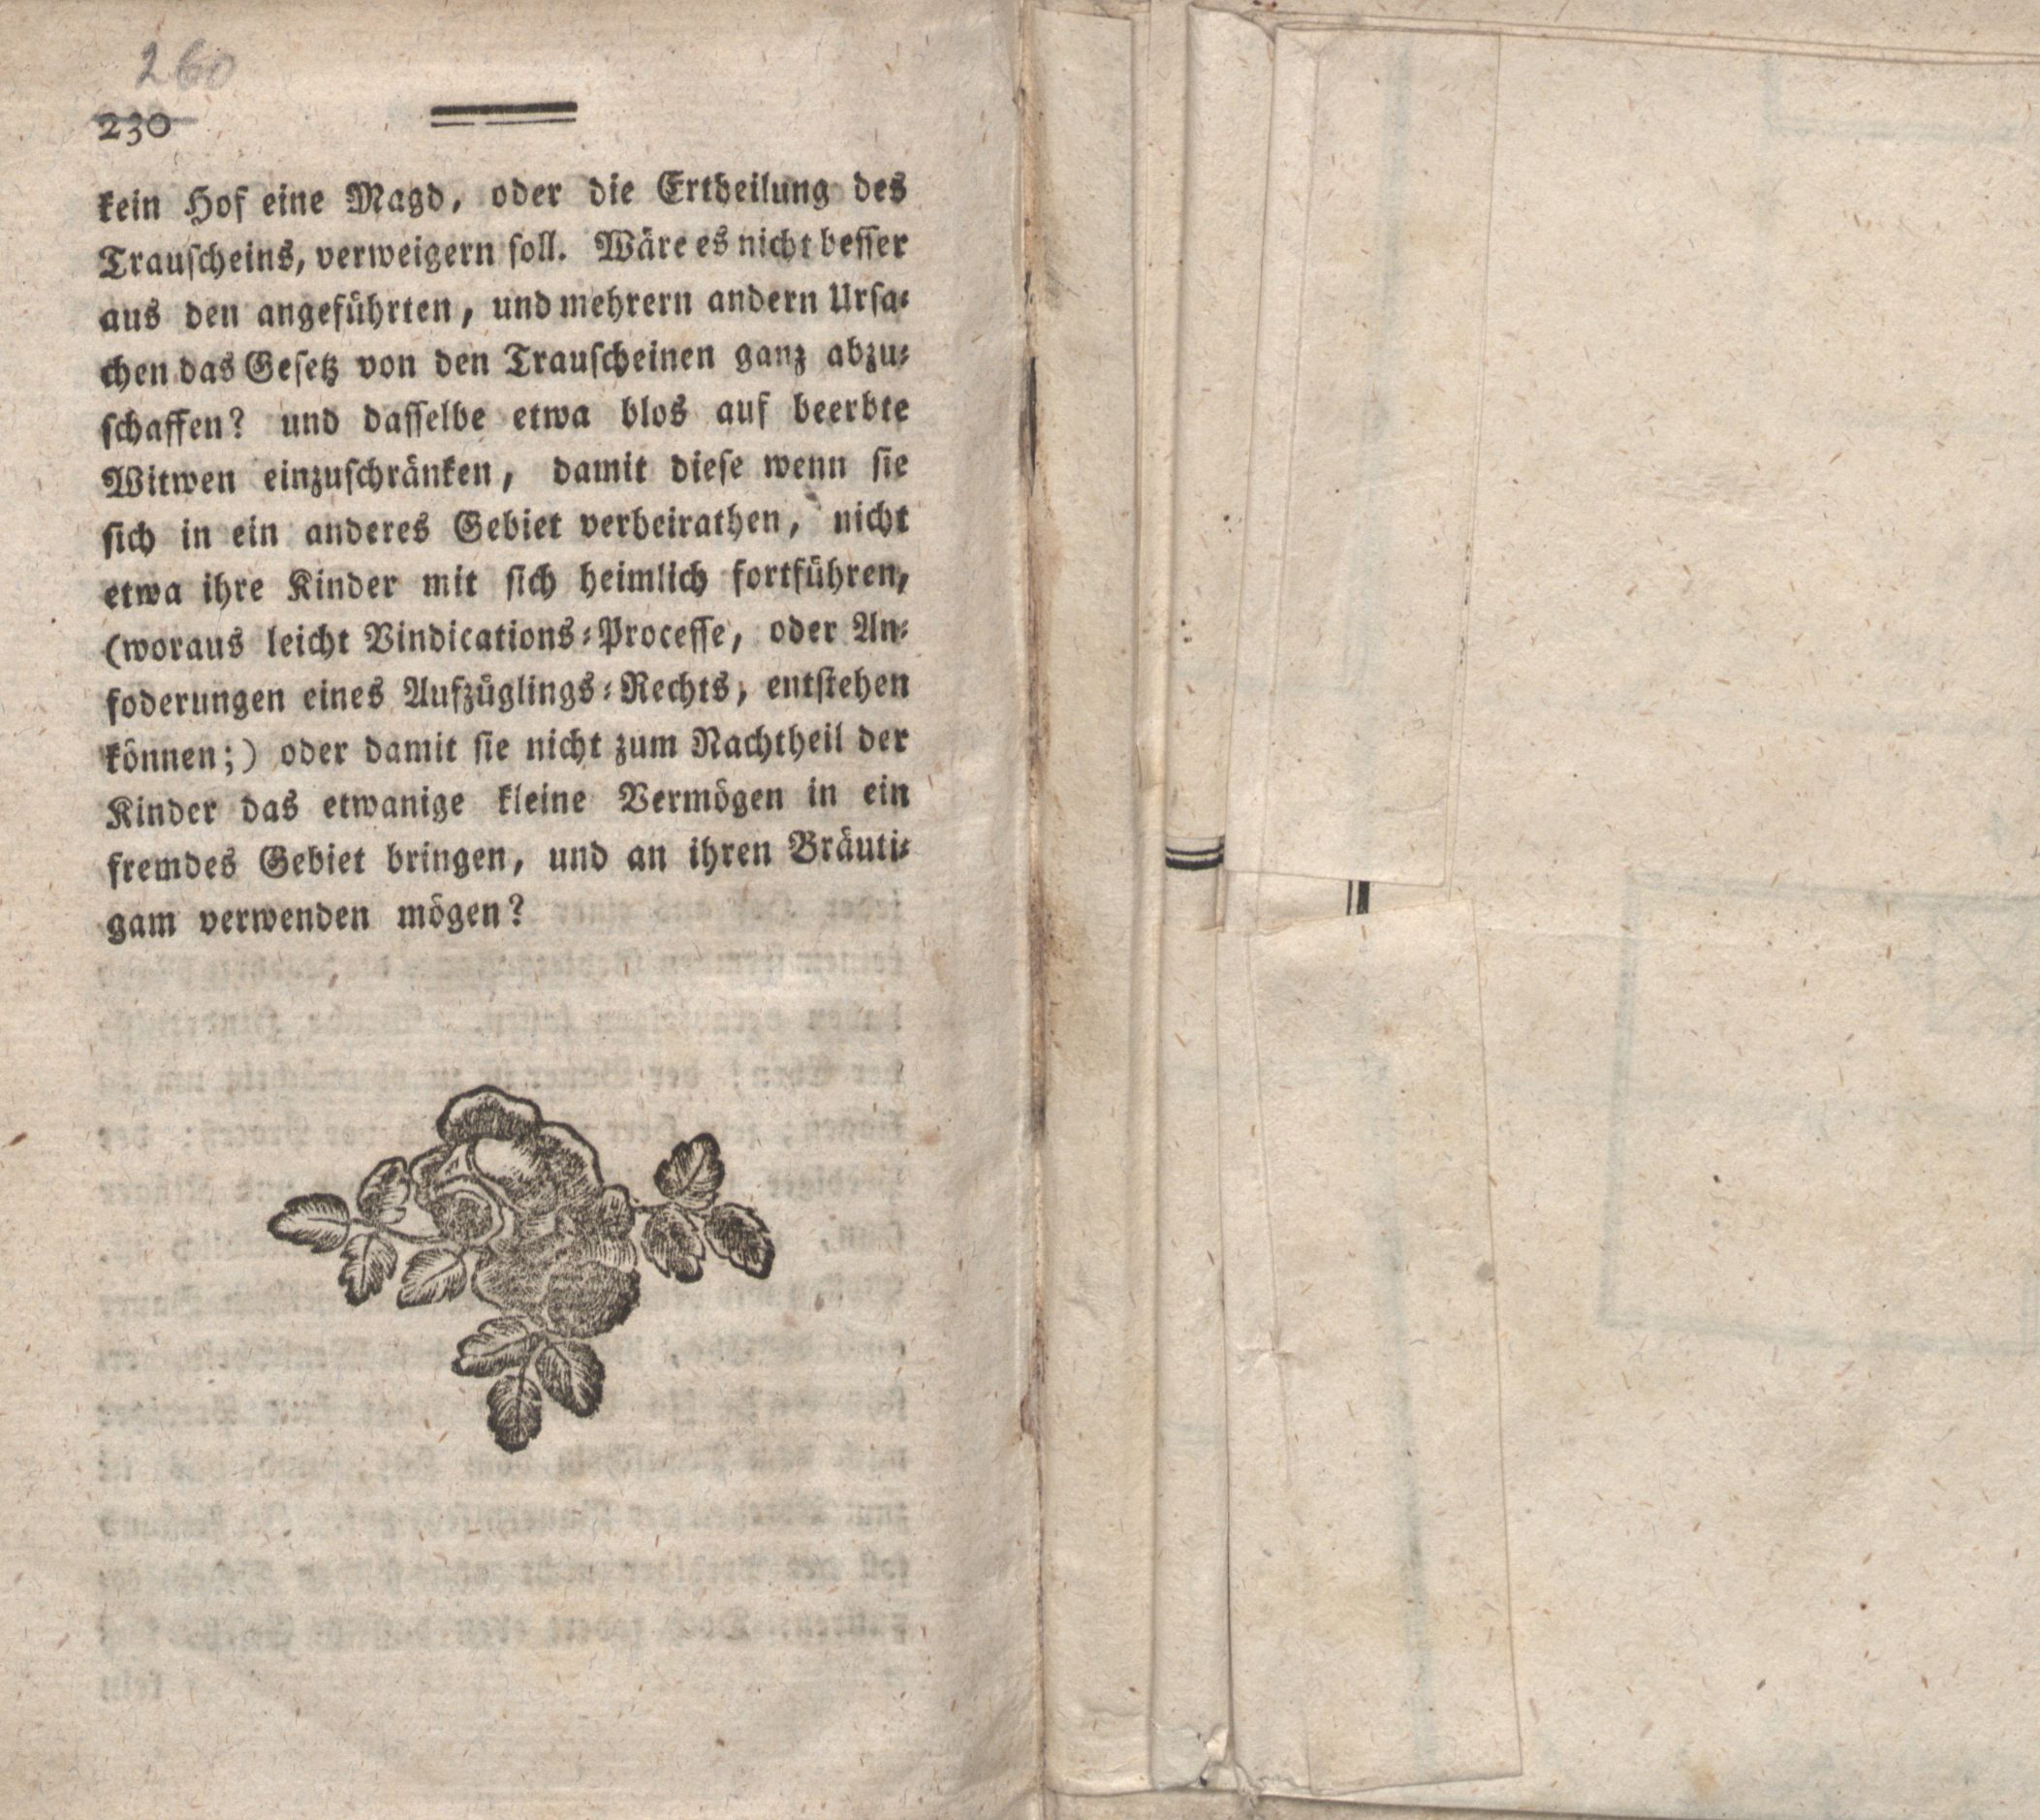 Nordische Miscellaneen [08] (1784) | 131. (260) Main body of text